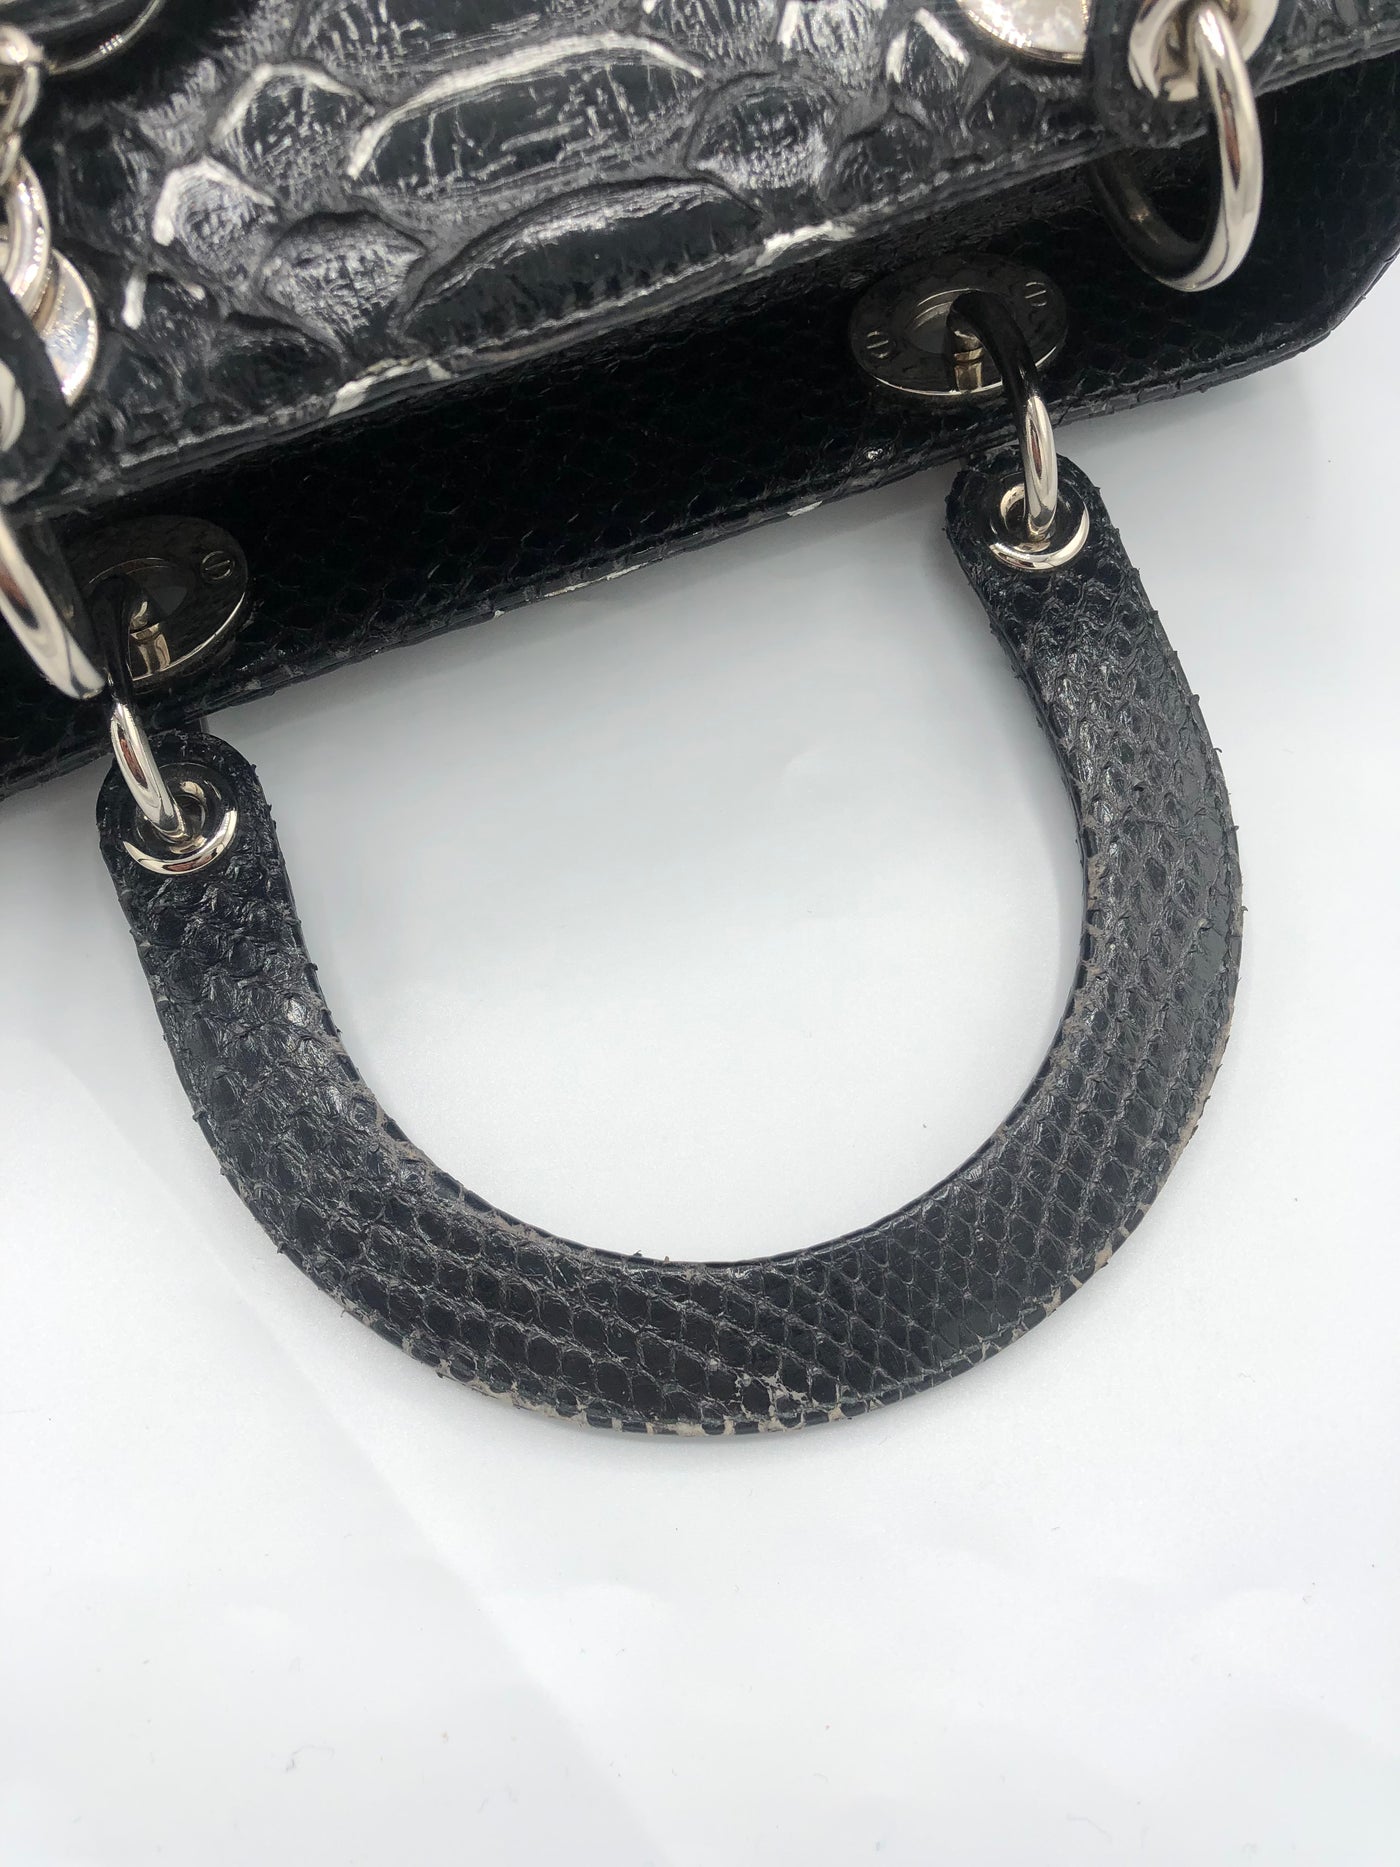 DIOR Lady Dior Medium black/silver python snakeskin handbag with shw